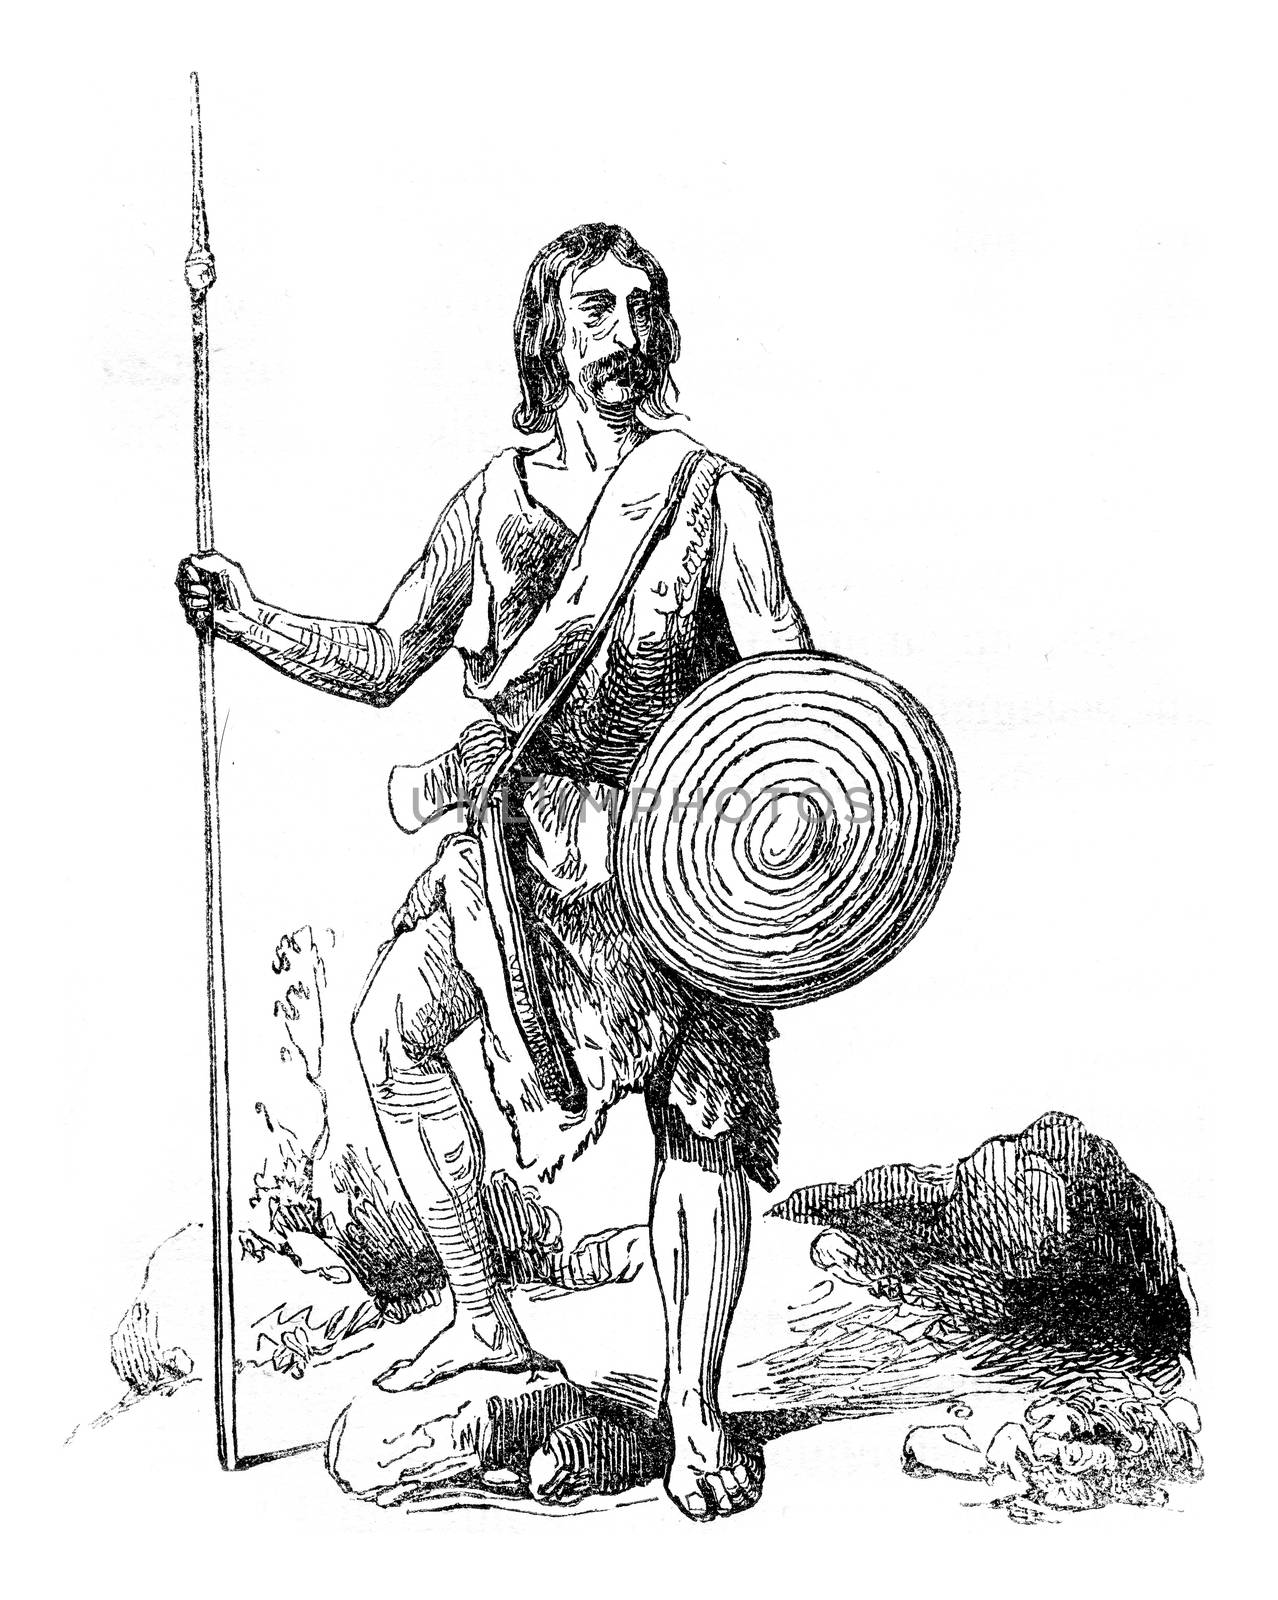 Breton warrior, vintage engraved illustration. Colorful History of England, 1837.
